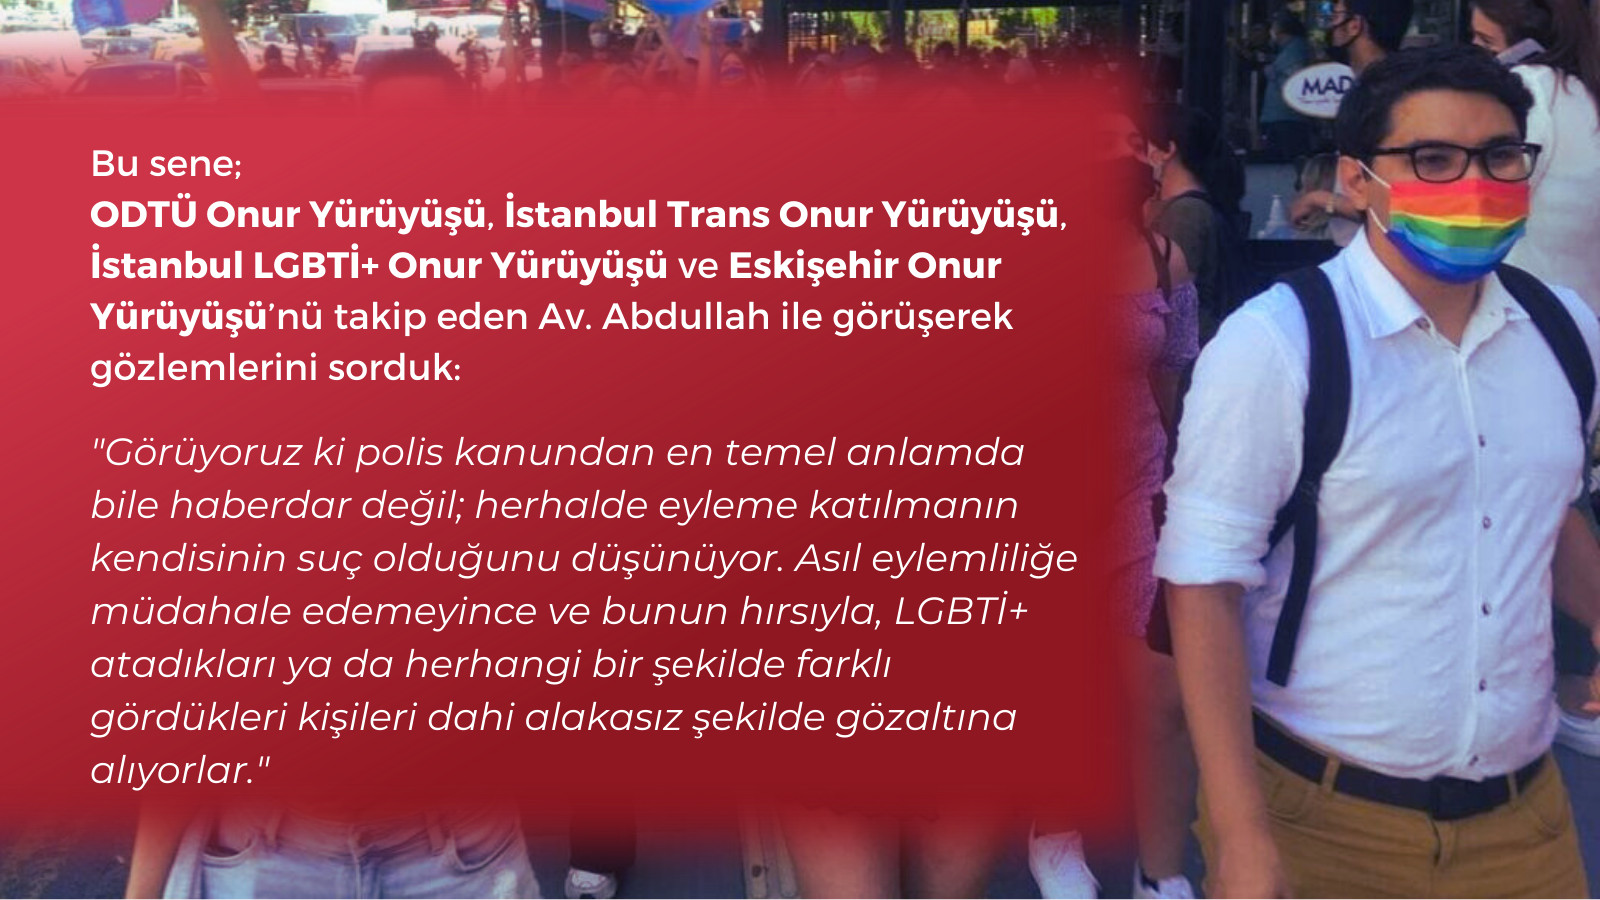 “Polislerin eylemliliğe müdahale edememenin hırsıyla LGBTİ+ atadıkları kişileri dahi gözaltına aldığını gördük” | Kaos GL - LGBTİ+ Haber Portalı Haber